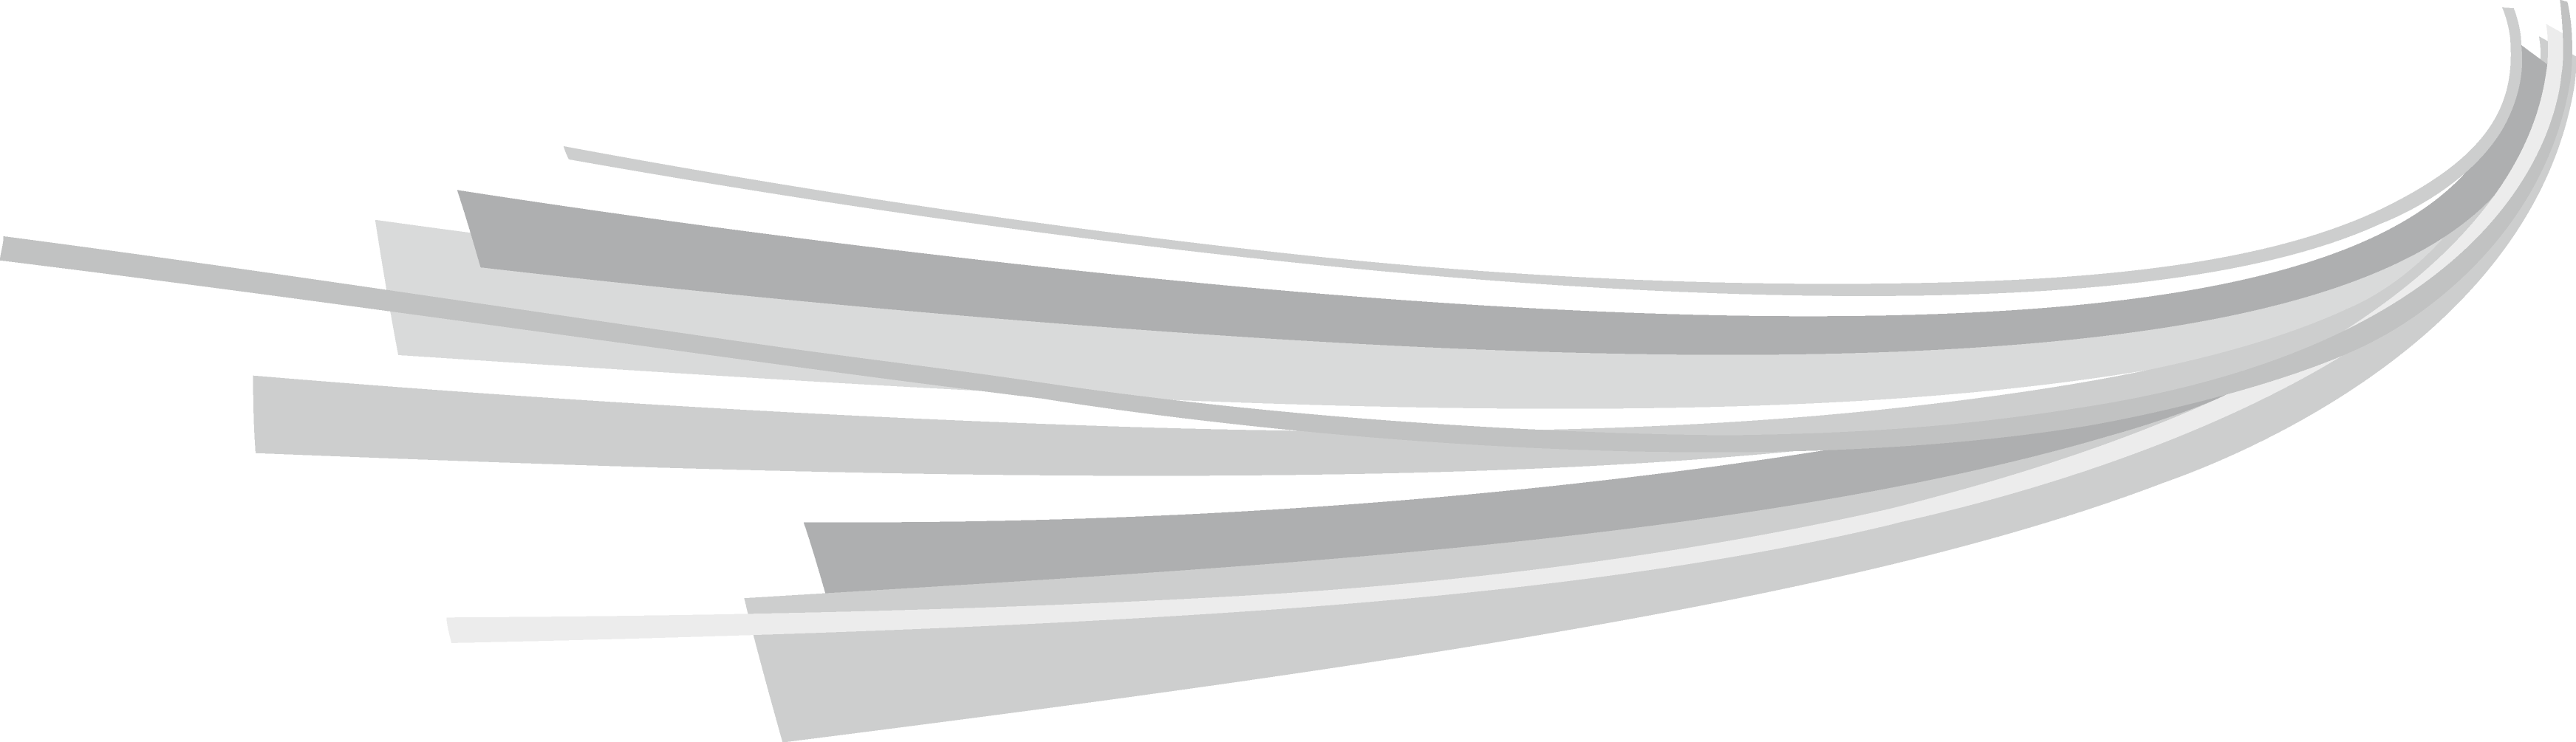 خطوط مجردة رمادية PNG صورة مع خلفية شفافة